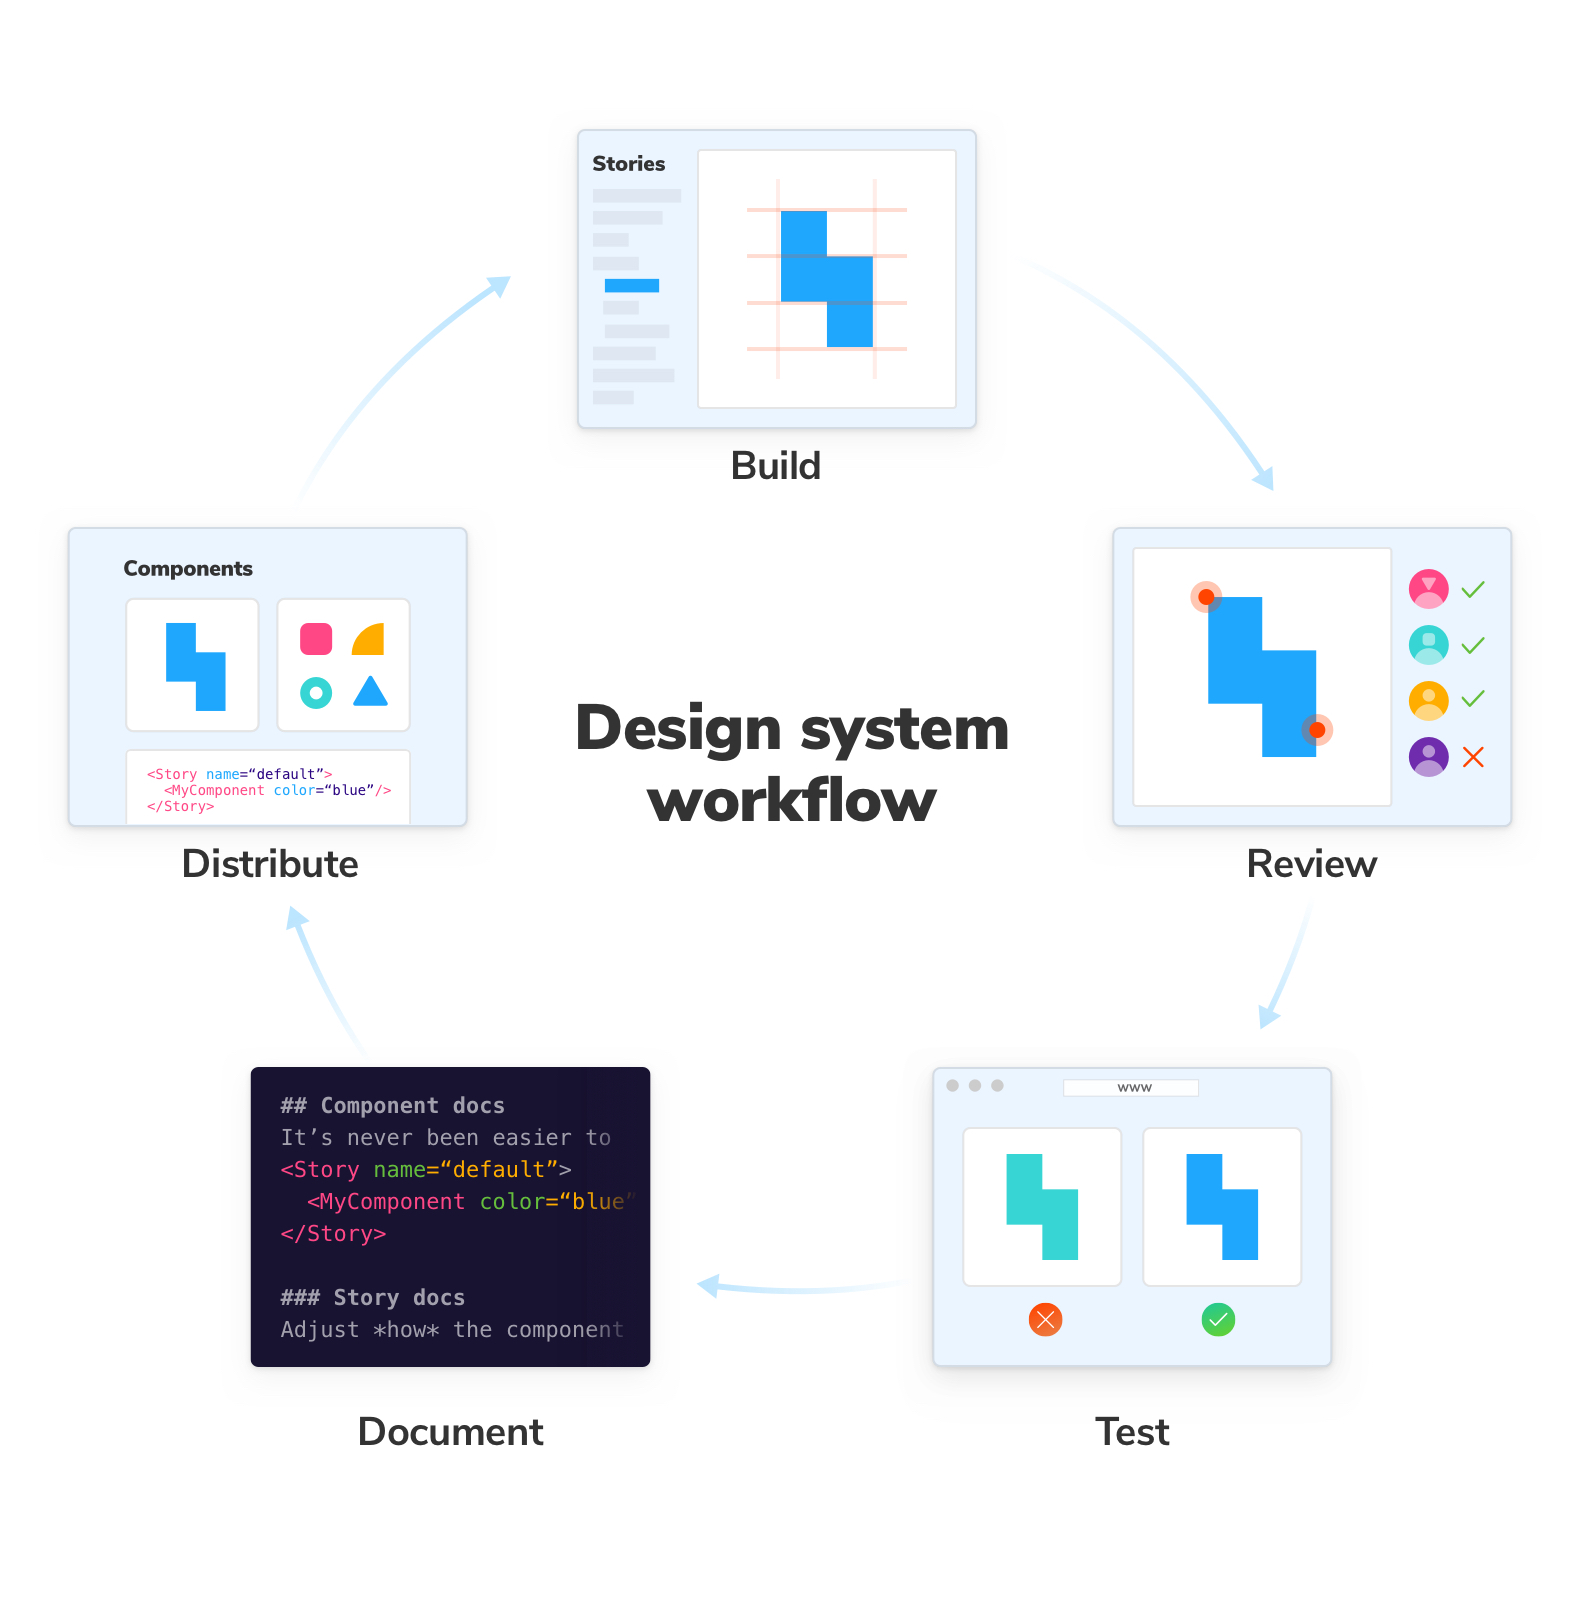 디자인 시스템 작업 흐름(workflow)